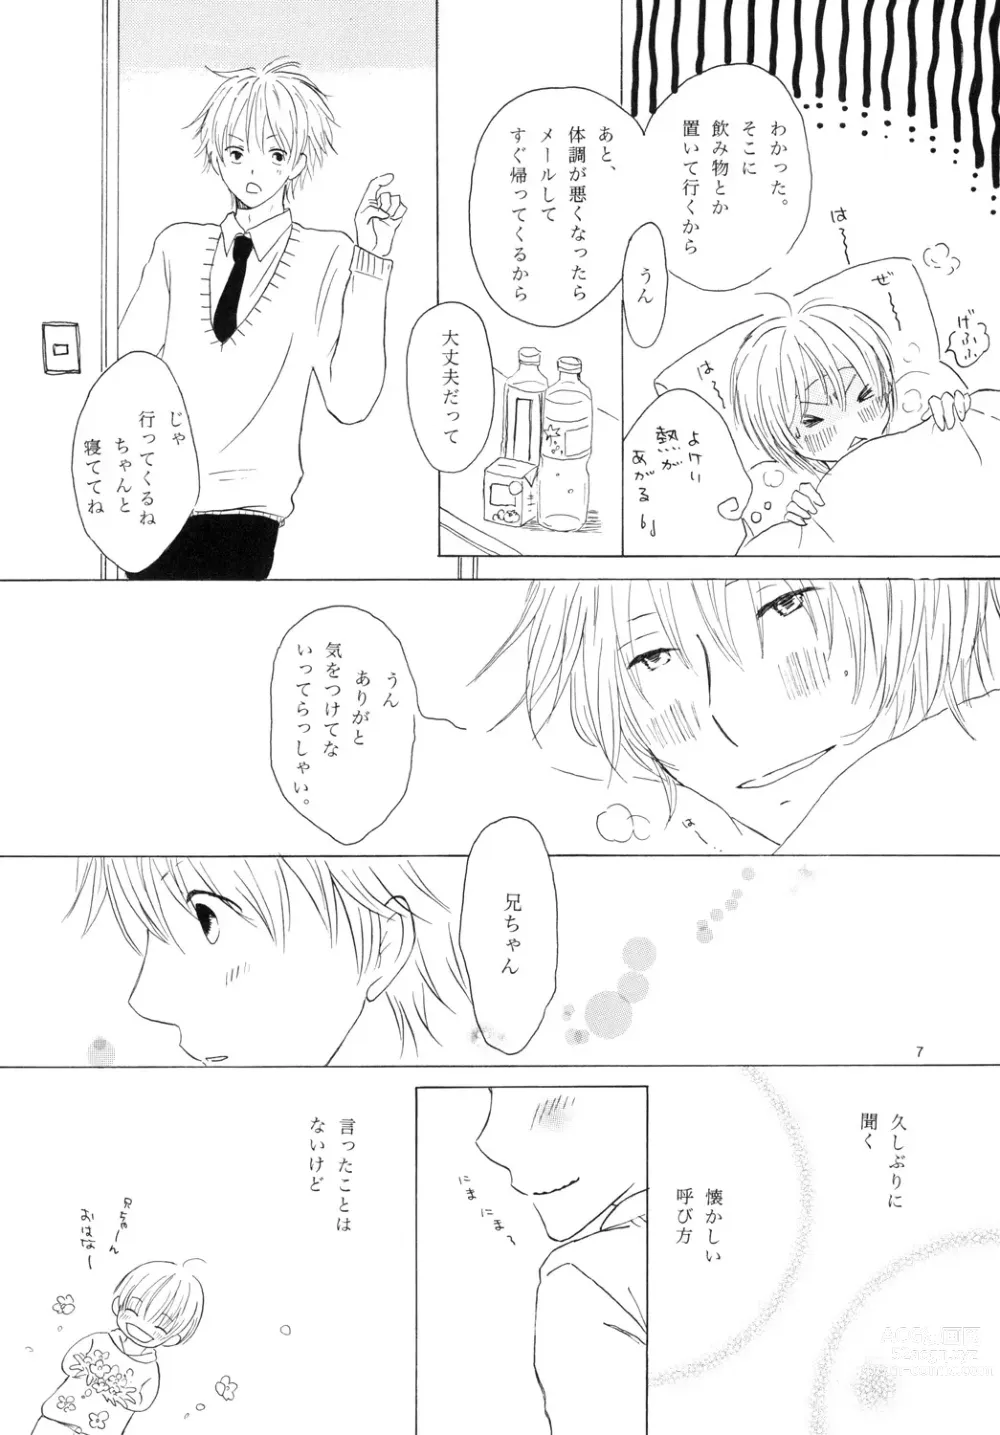 Page 7 of doujinshi Doushita no Chika-chan？